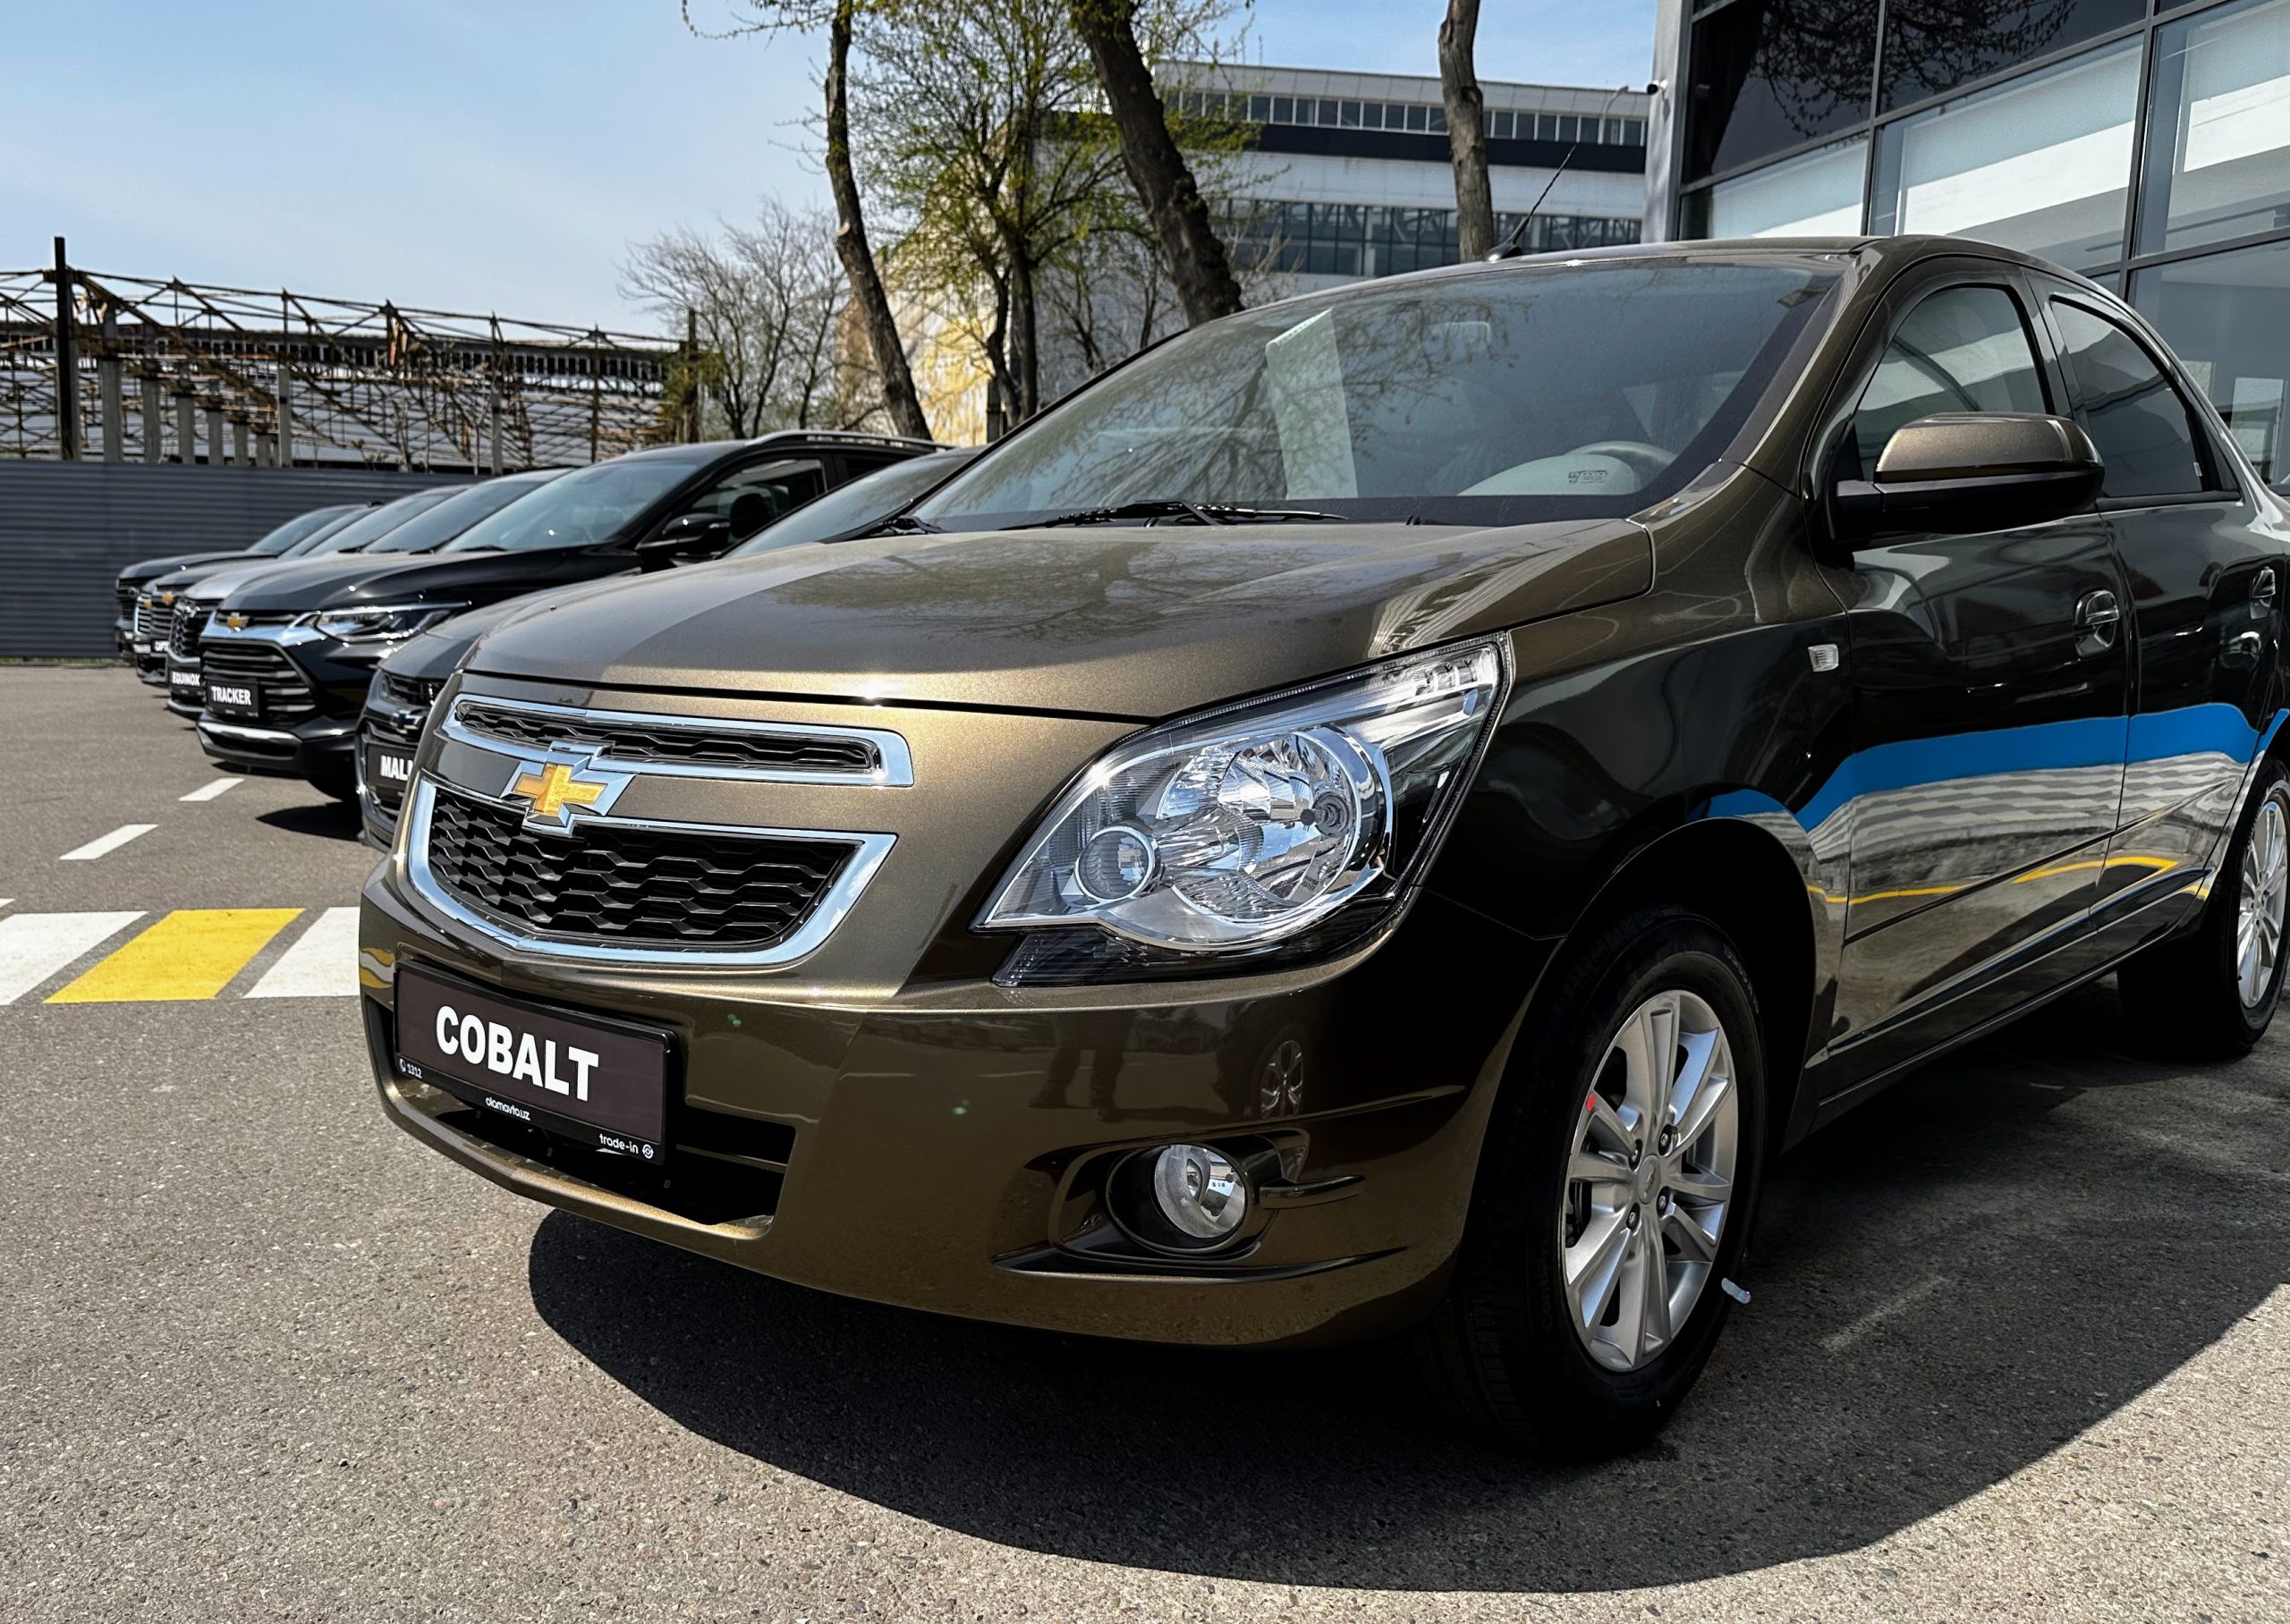 Chevrolet Cobalt Style AT Plus (Zeus) в автосалоне в Ташкенте